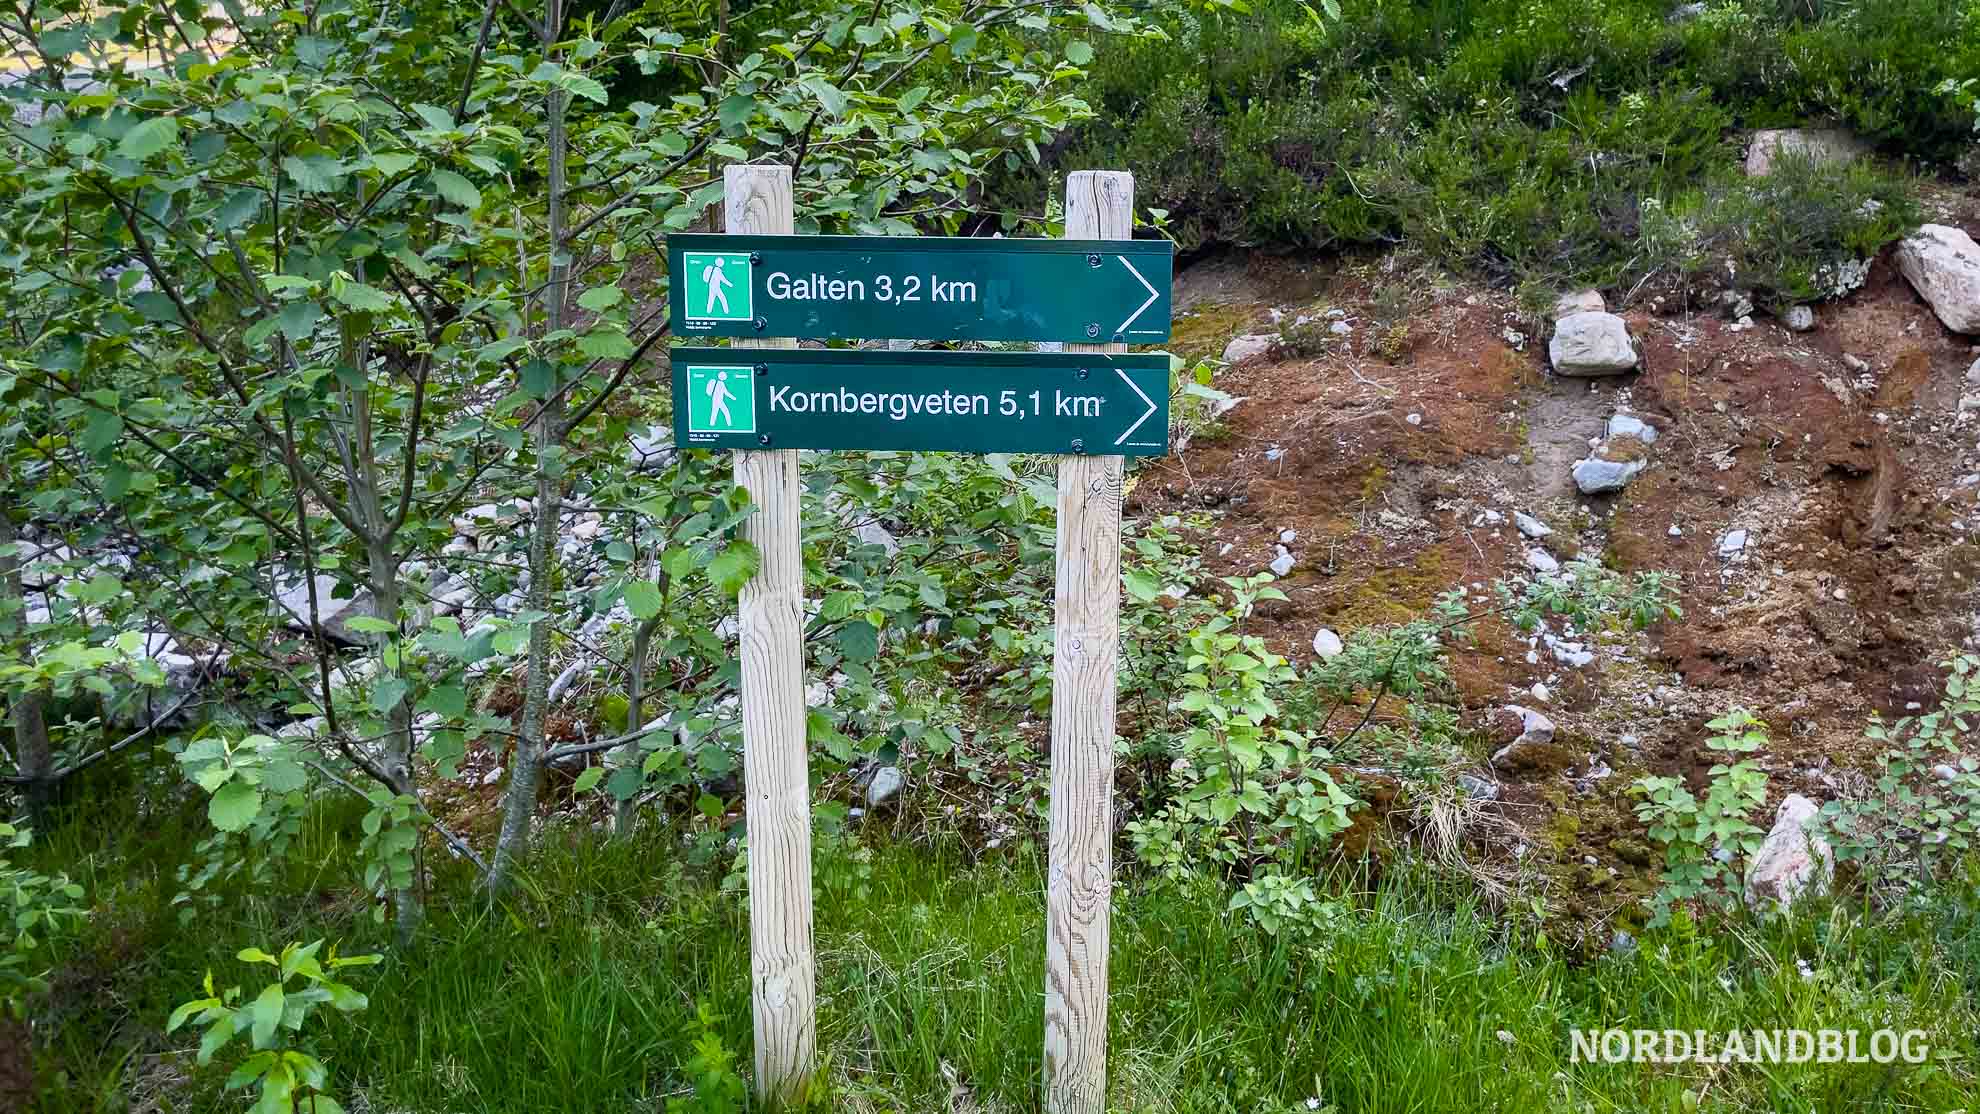 Wegweiser zum Galten - Felszunge über den Dalsfjord (Sunnmøre)